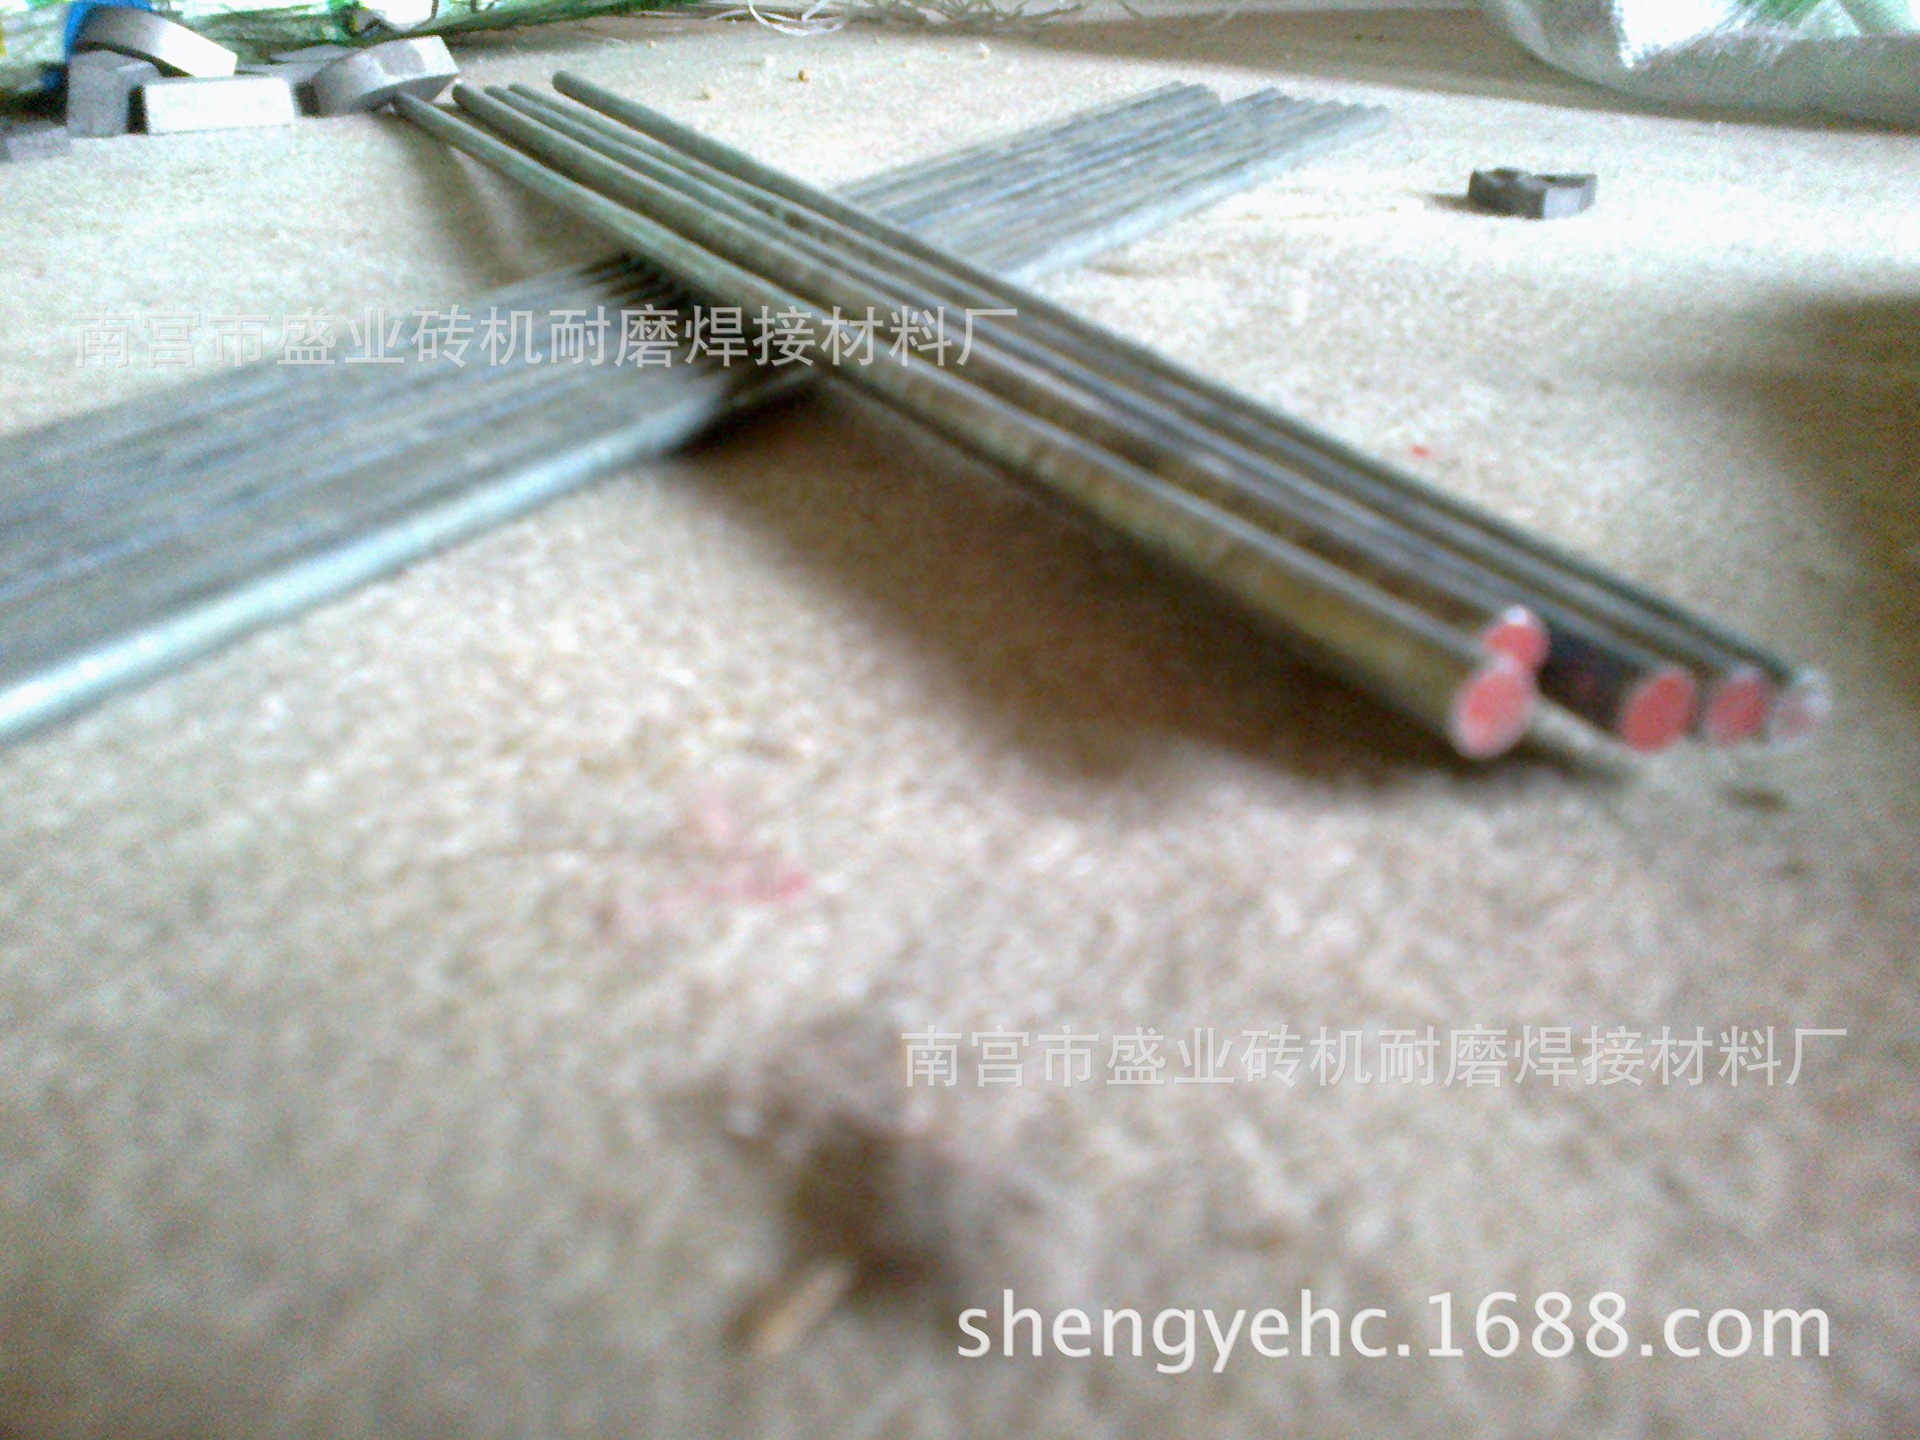 钴基焊丝HS111 高温高压阀门钴基焊丝 热剪切刀刃热锻模耐磨焊丝示例图3